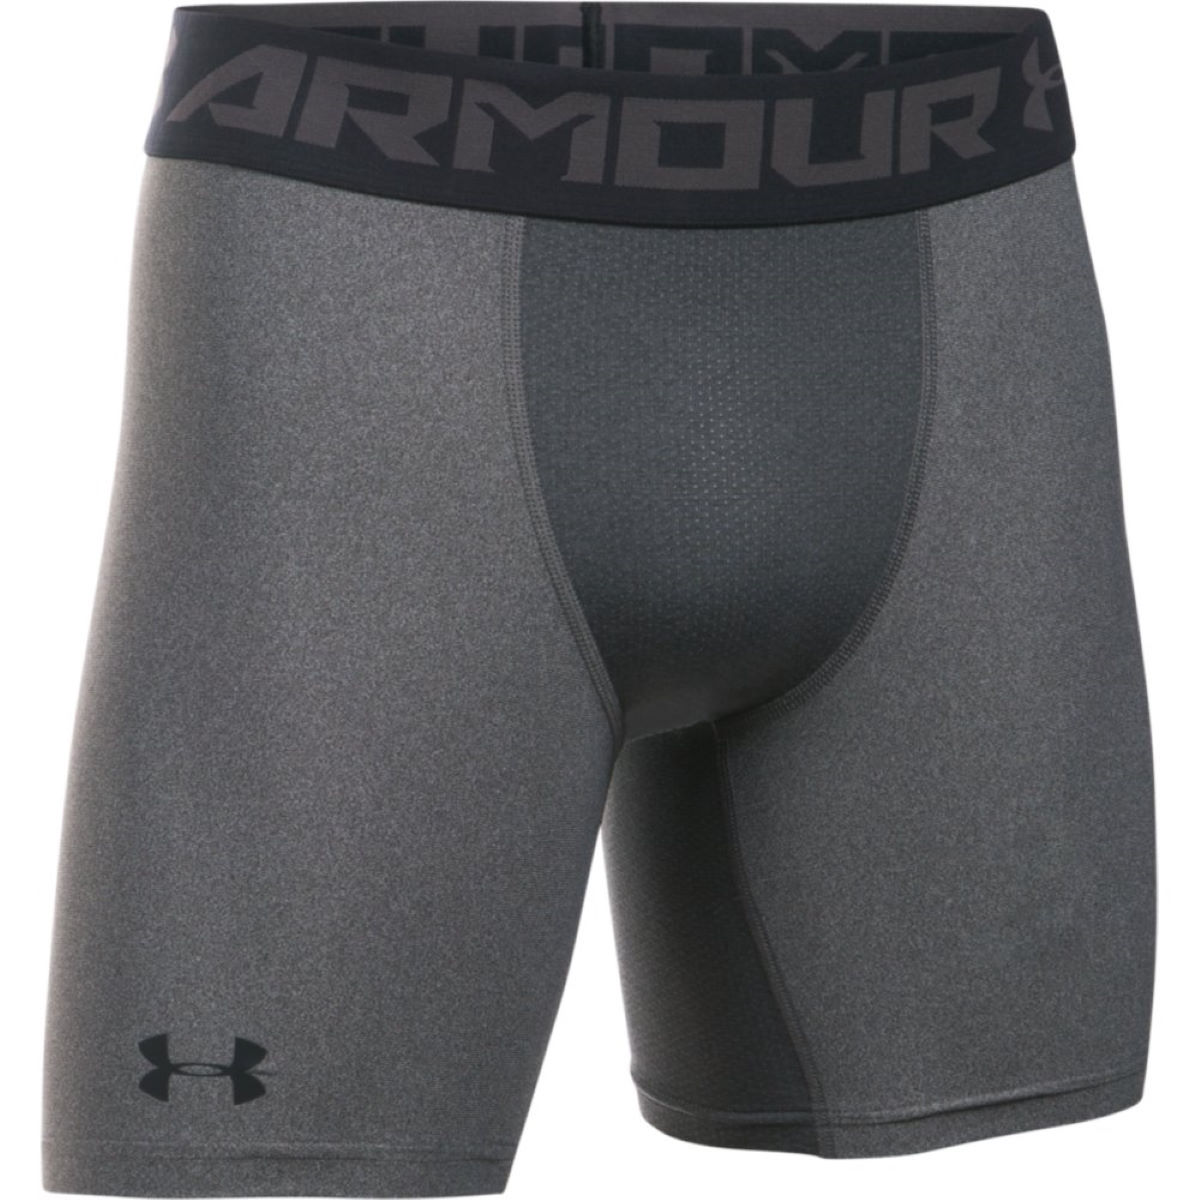 Pantalón corto de compresión Under Armour HeatGear Armor 2.0 - Mallas cortas de compresión